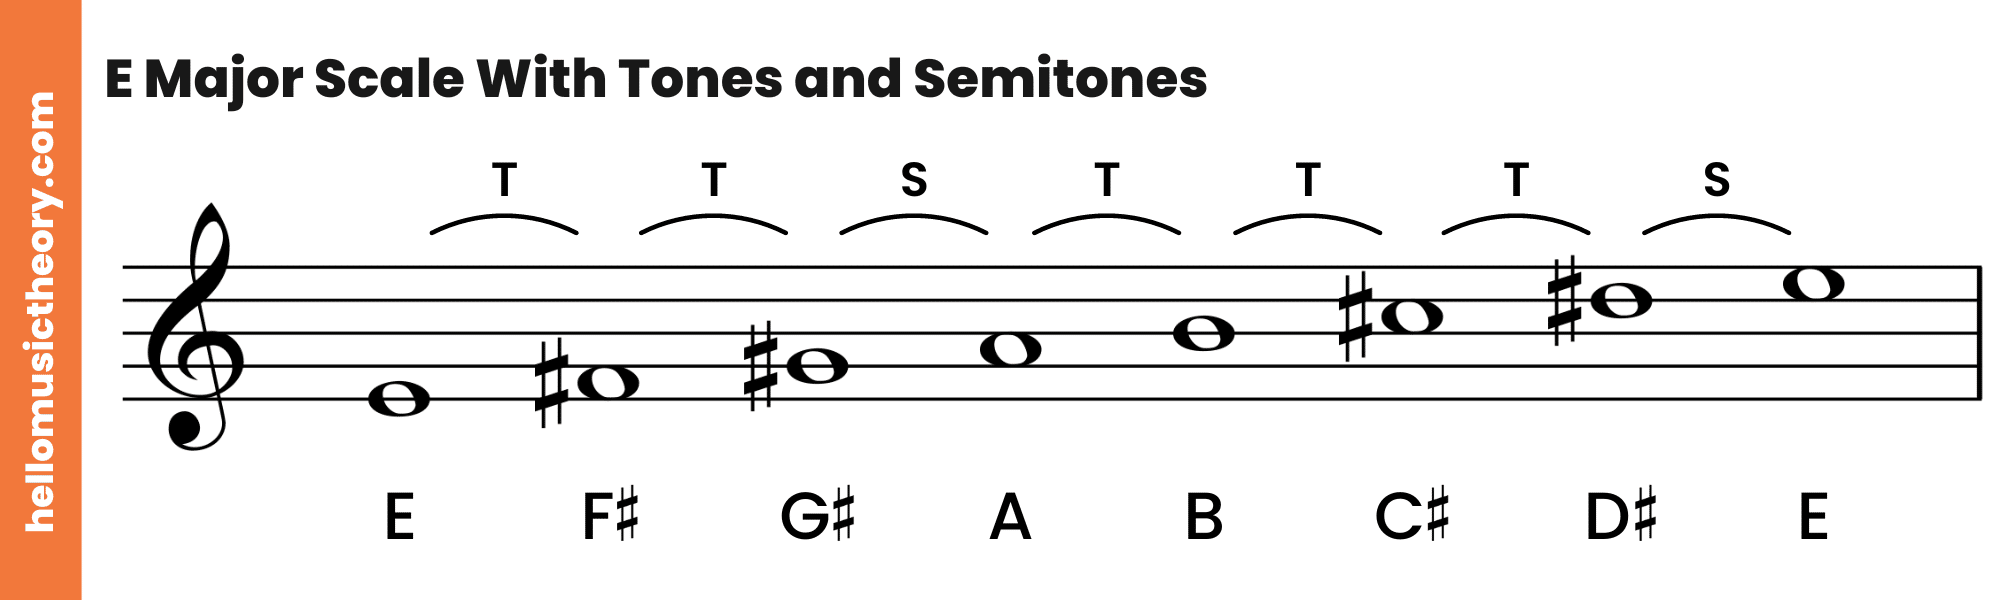 E Major Scale Treble Clef With Tones and Semitones